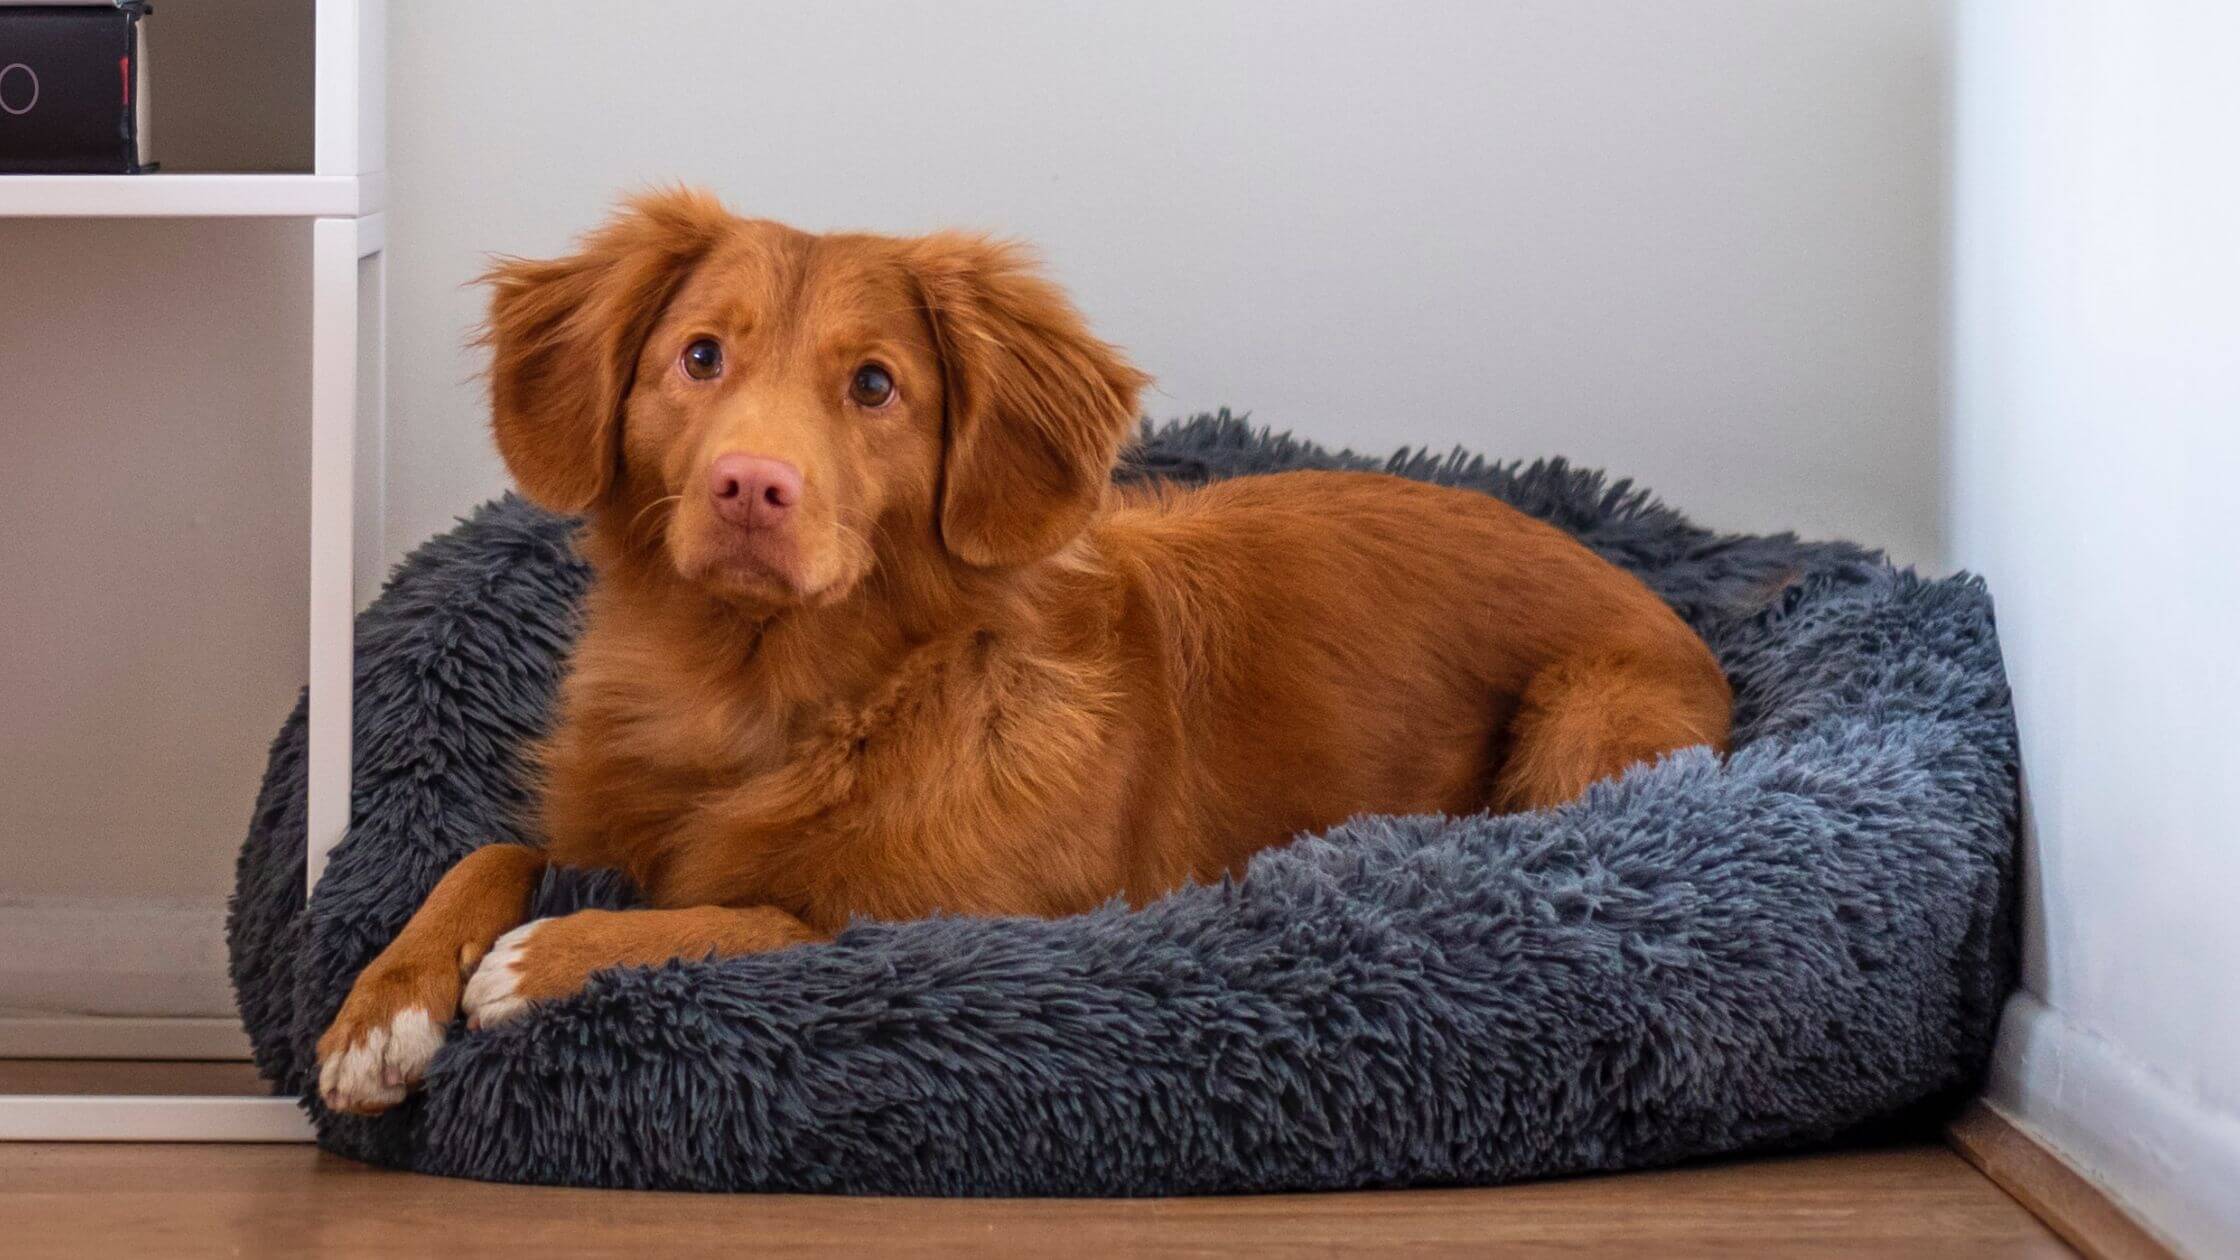 Memory foam dog mat provide healthy and ergonomic lying.